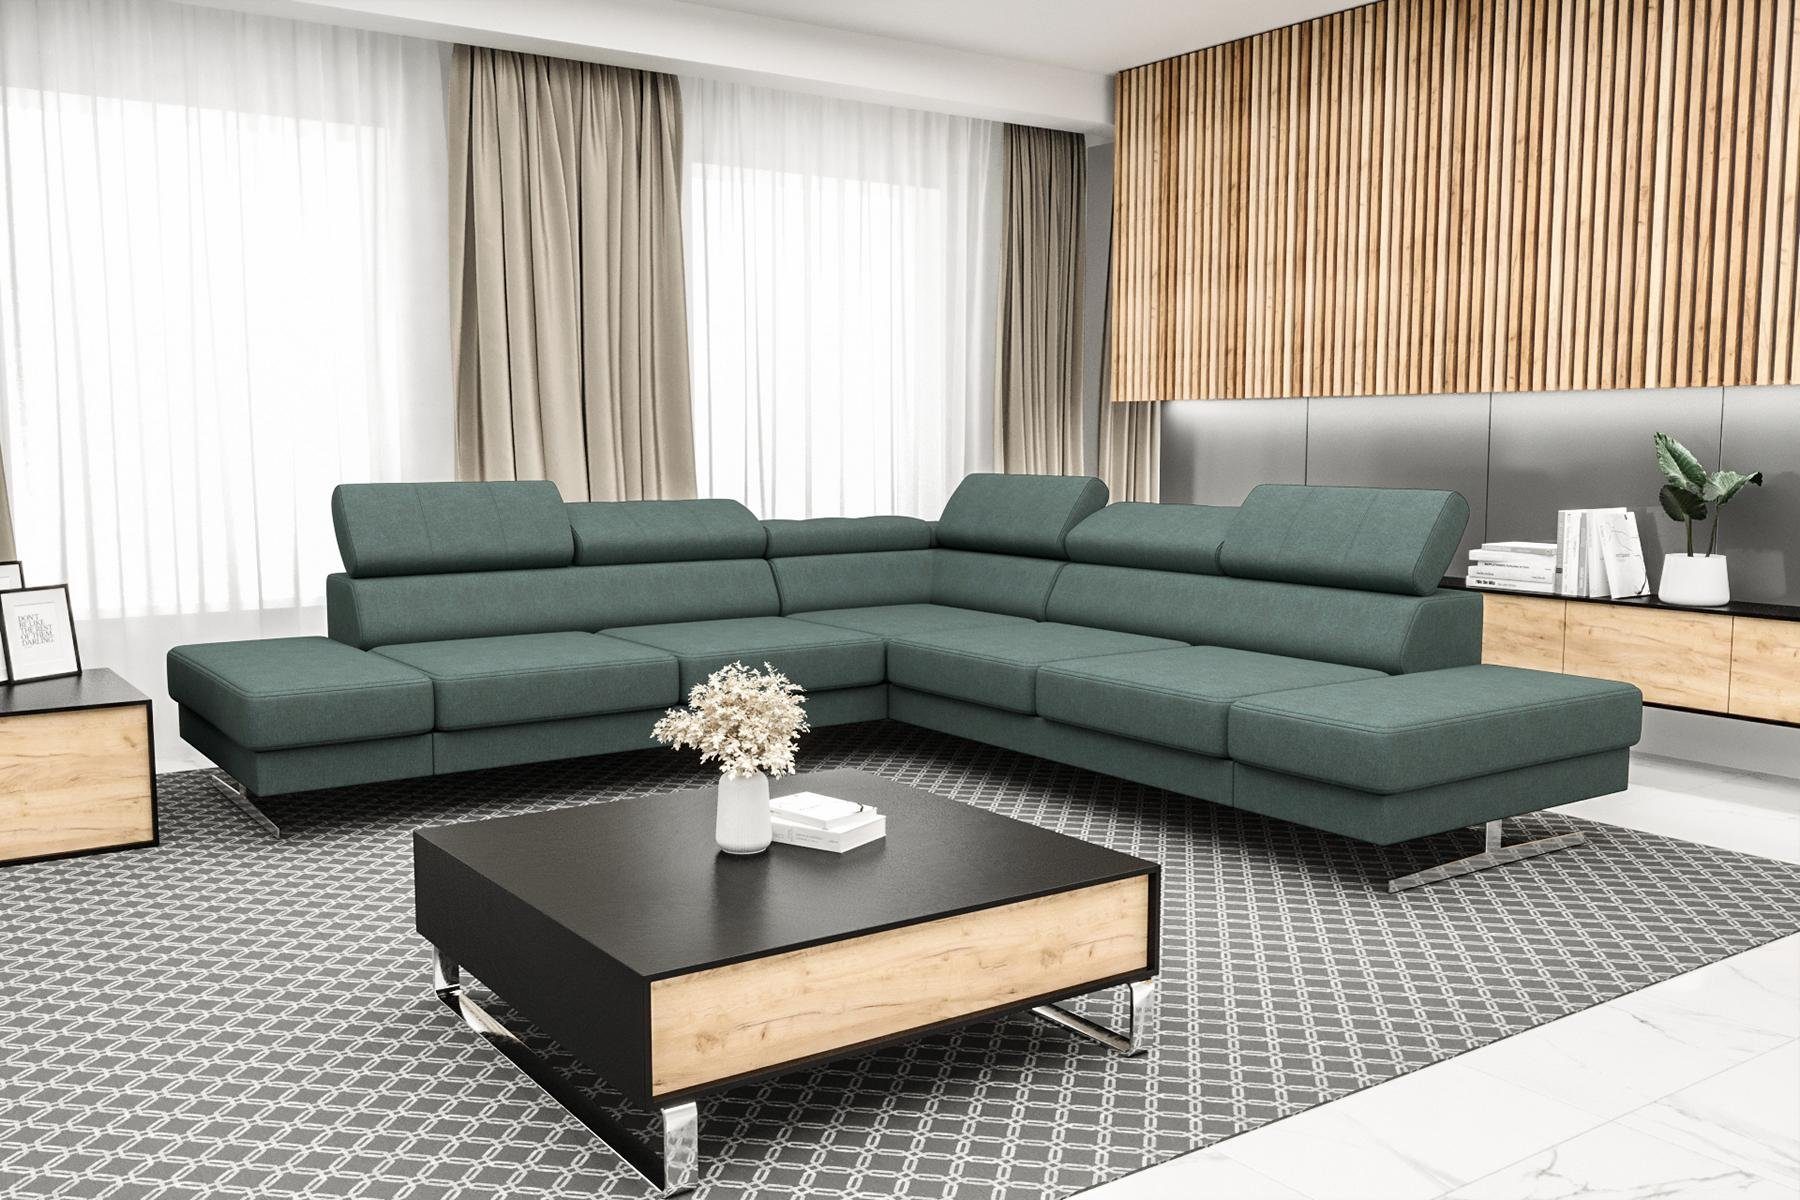 JVmoebel Ecksofa Designer Schwarzes L-Form Luxus Sofa Wohnzimmer Couch Textil, Made in Europe Grün